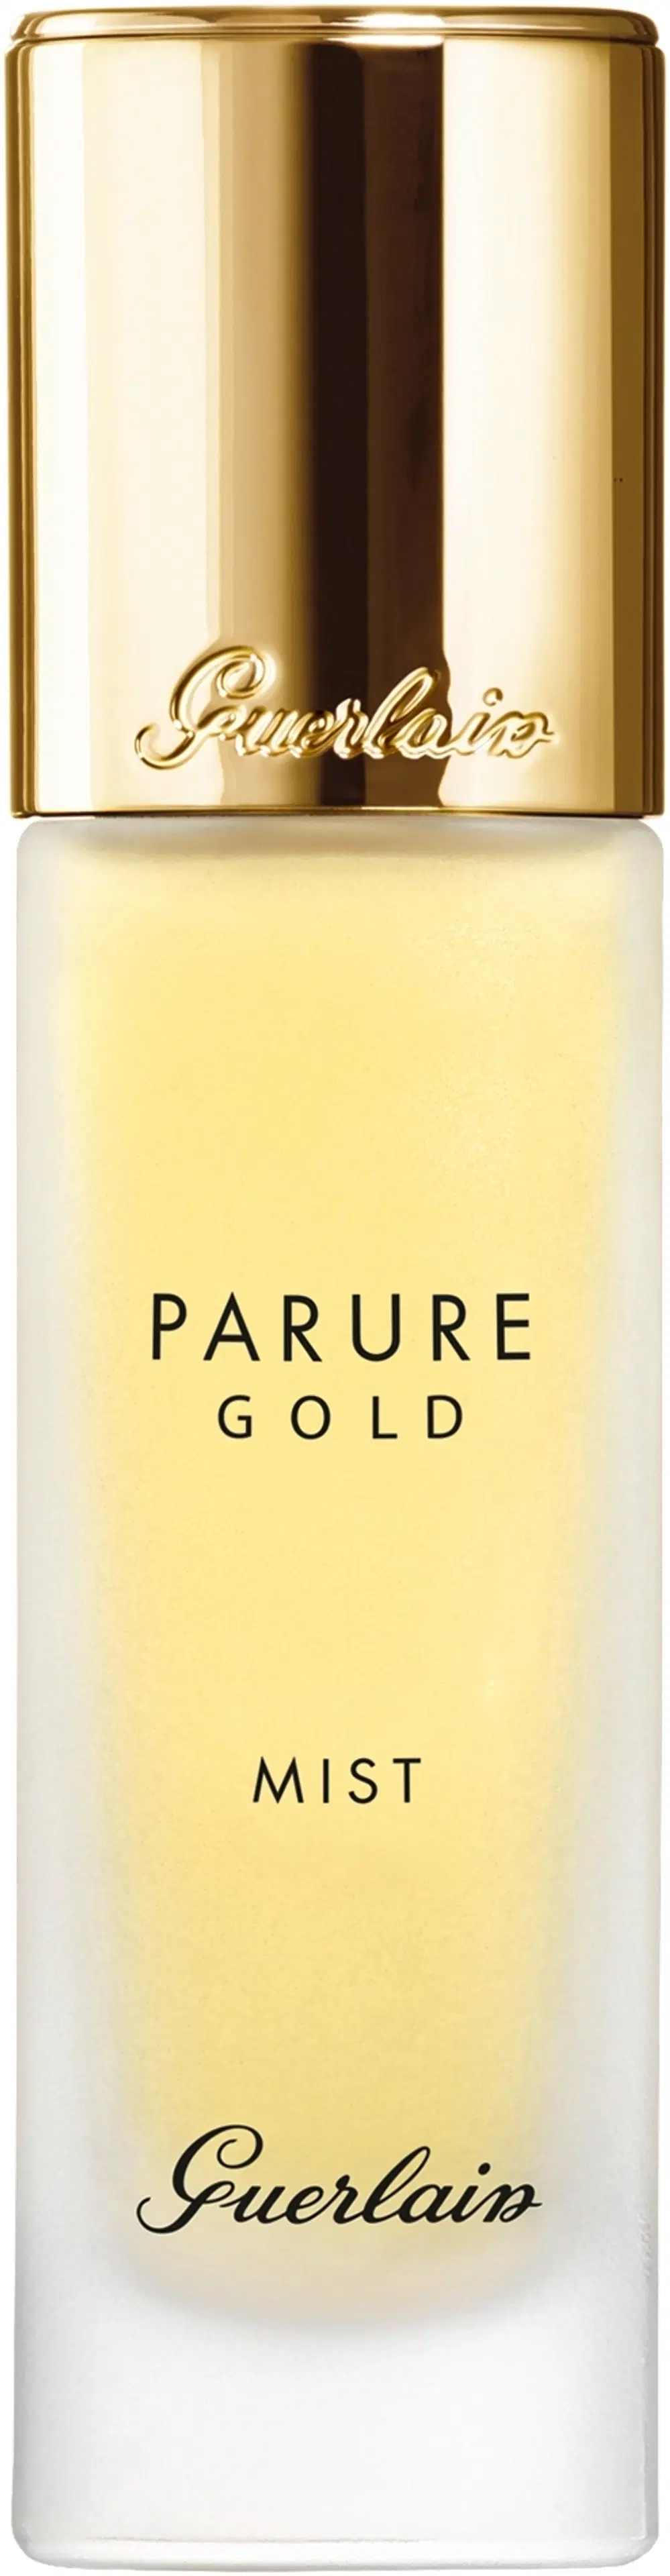 Guerlain Parure Gold Mist 30ml